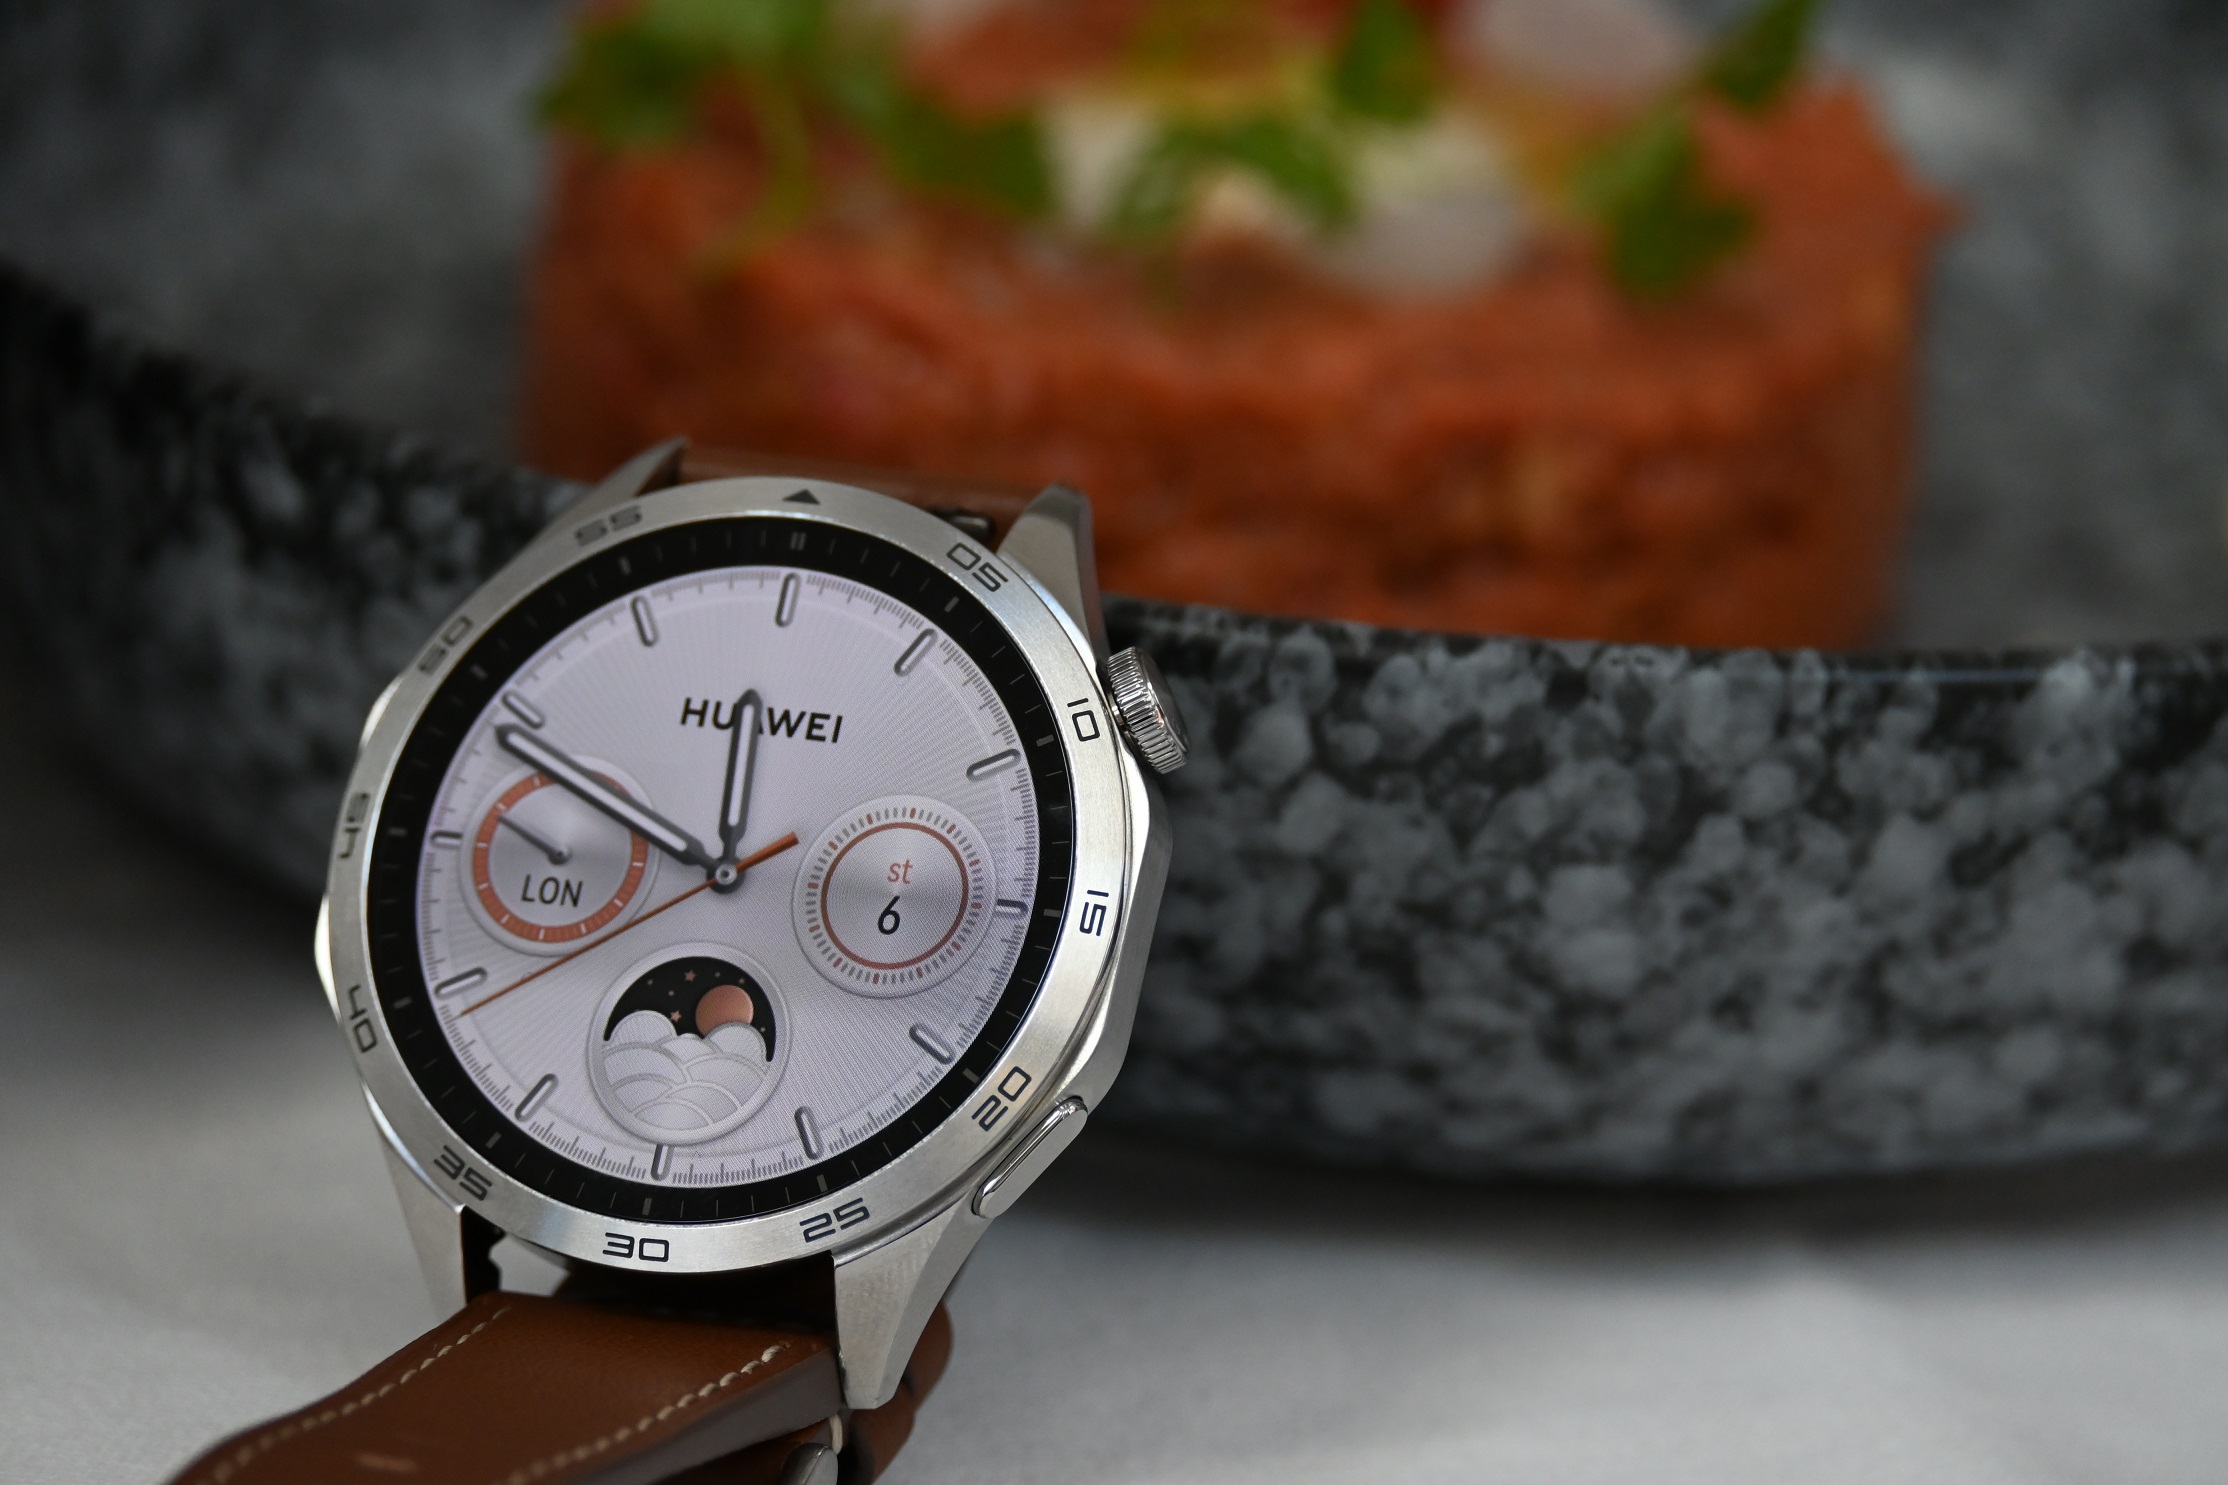 Huawei nÃ¡m predstavil novÃ© modely svojich GT hodiniek